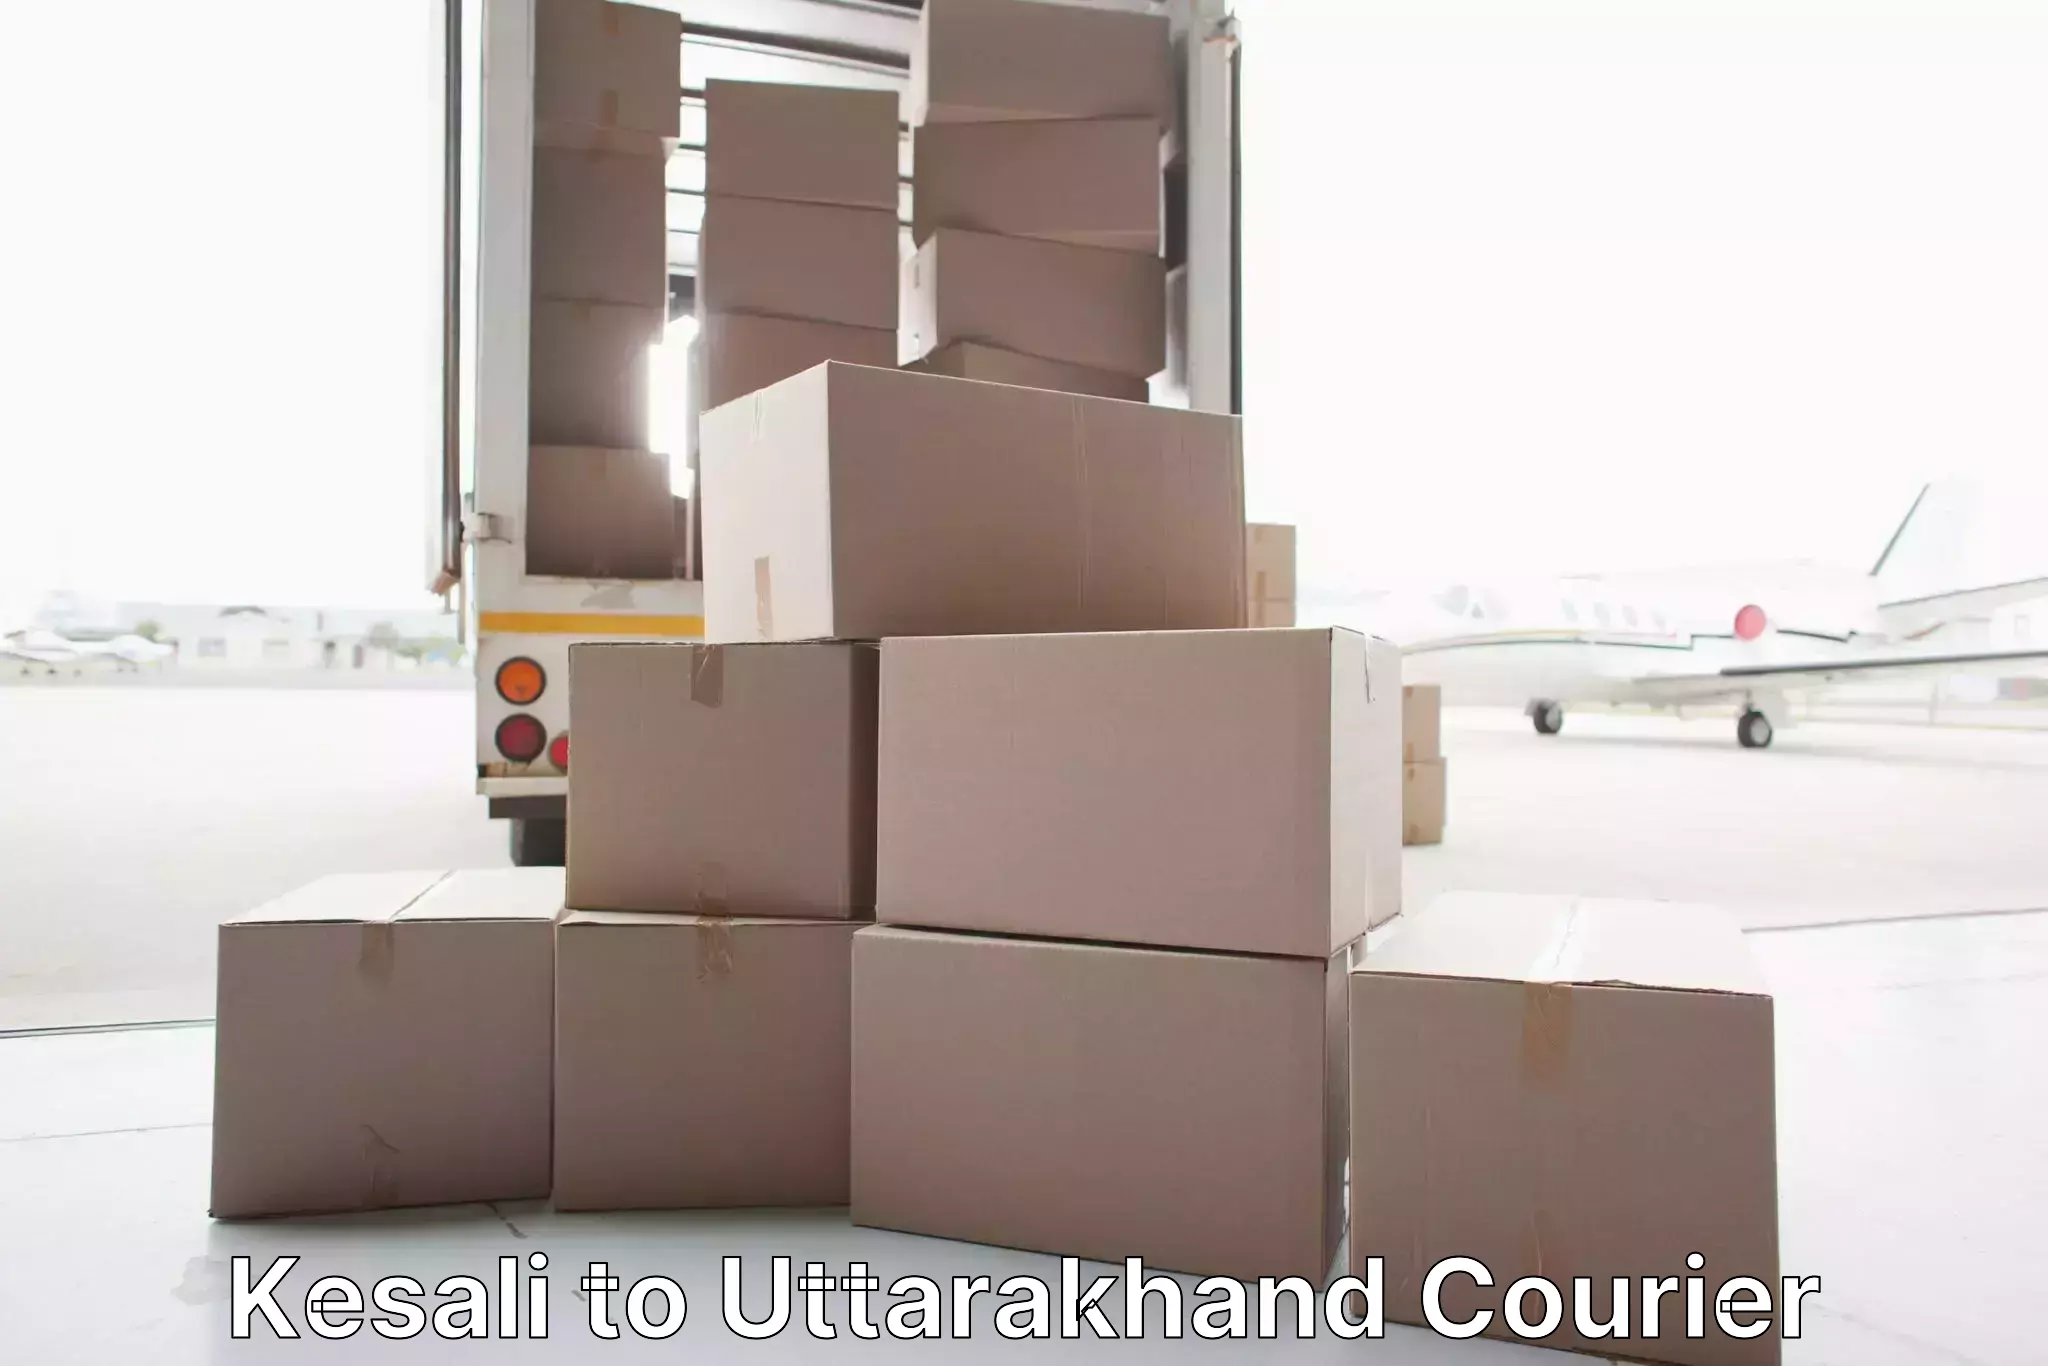 Expert moving and storage Kesali to Rishikesh